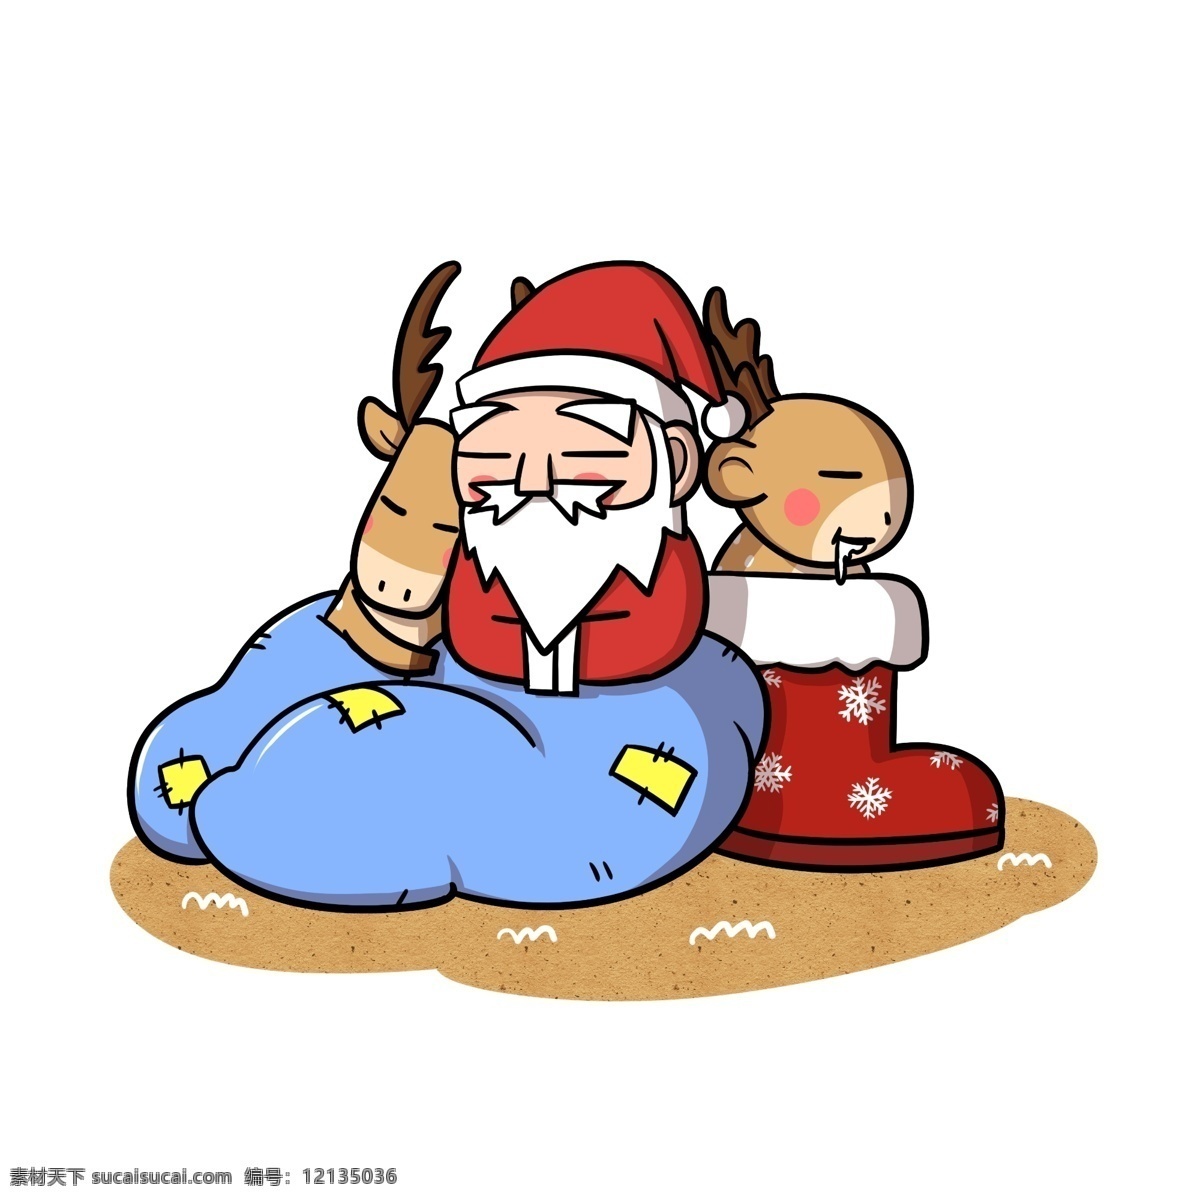 圣诞老人 驯鹿 睡觉 觉 透明 底 christmas 卡通圣诞老人 卡通驯鹿 圣诞快乐 圣诞节快乐 圣诞节 冬季 卡通 节日